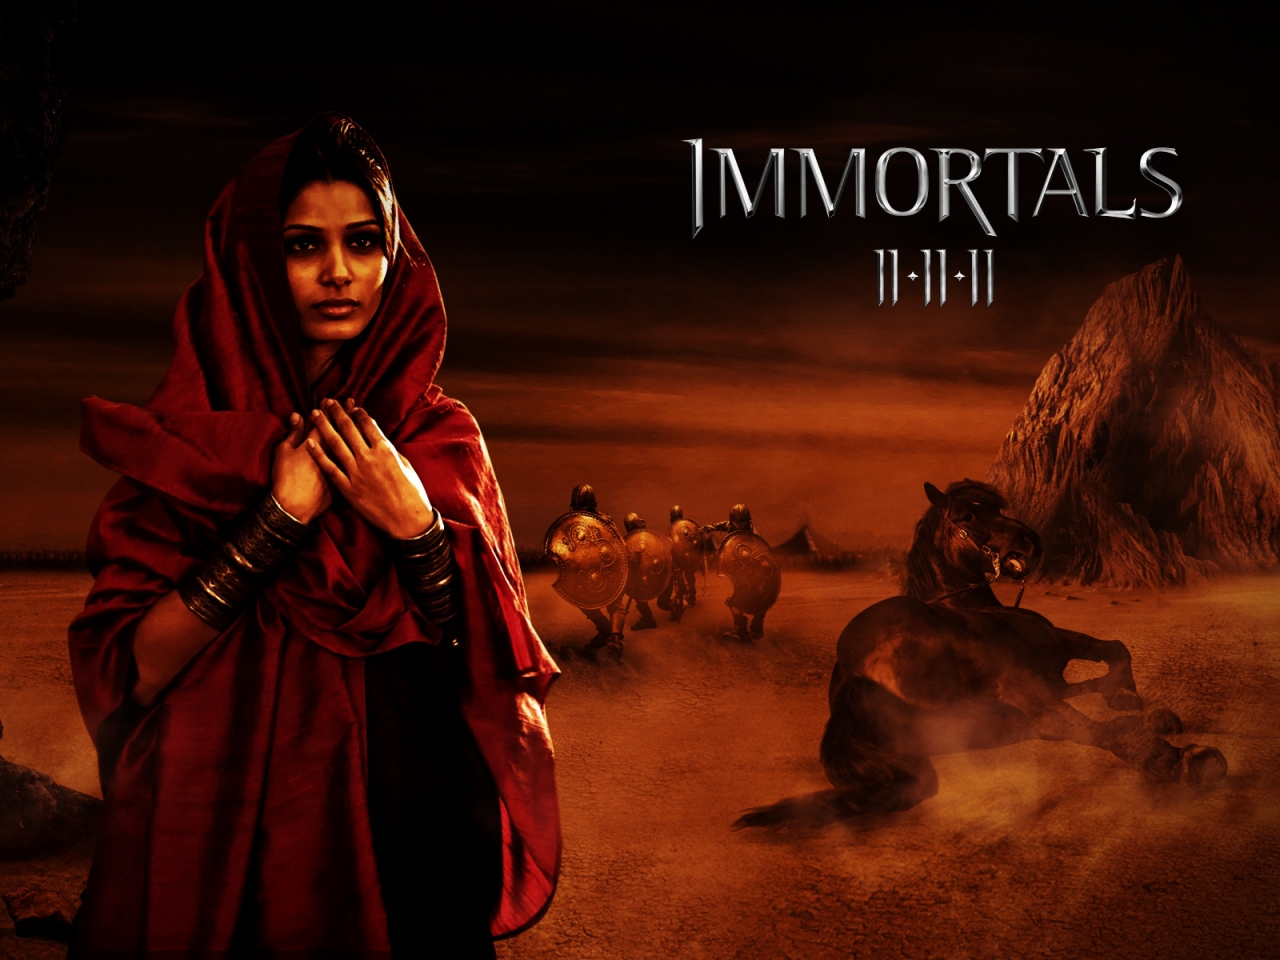 Immortals Movie Scene for 1280 x 960 resolution